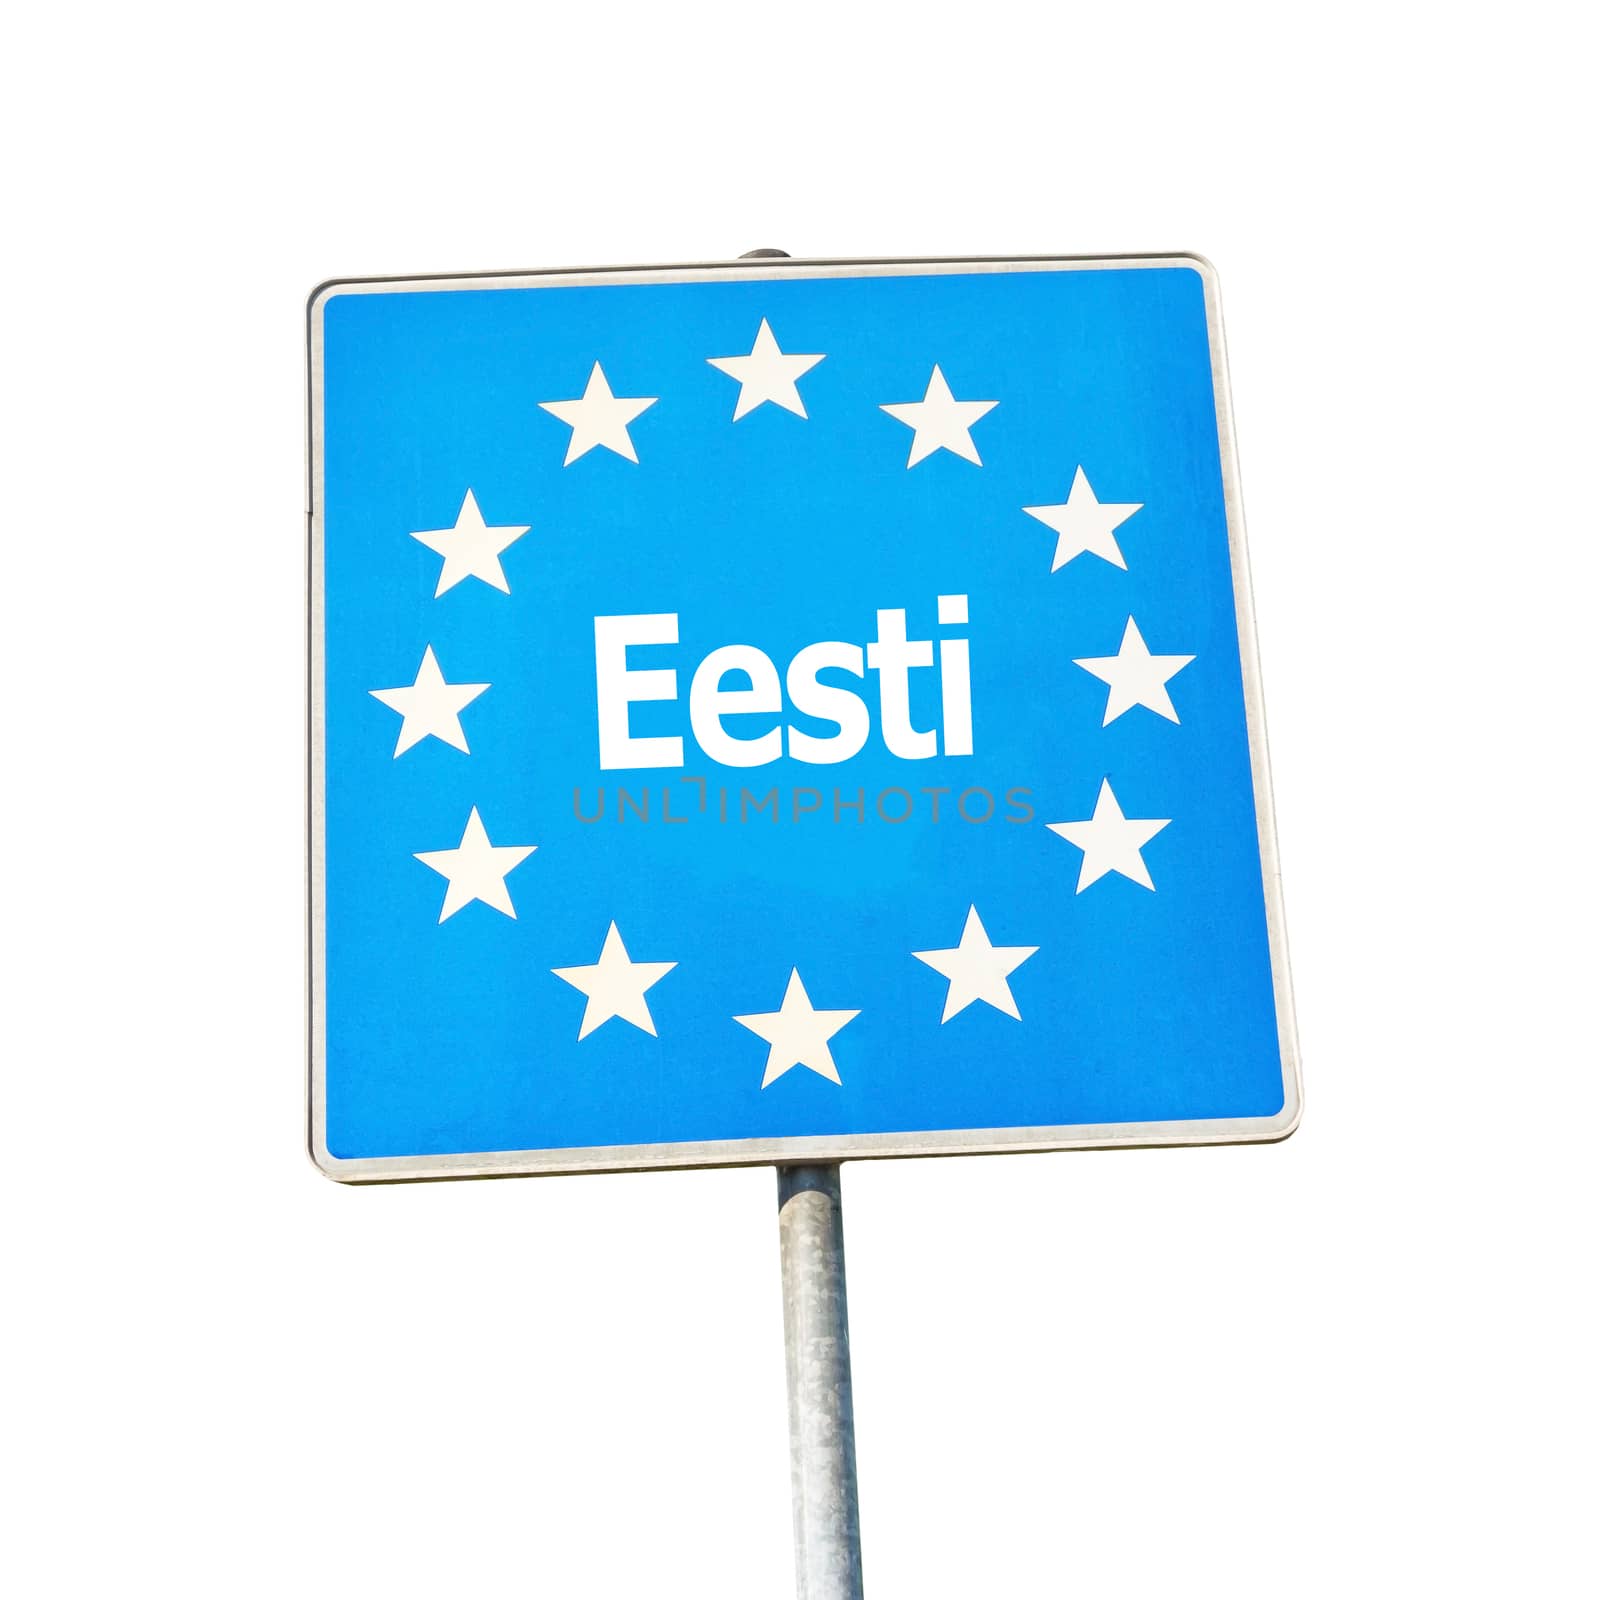 Border sign of estland, europe - isolated on white background